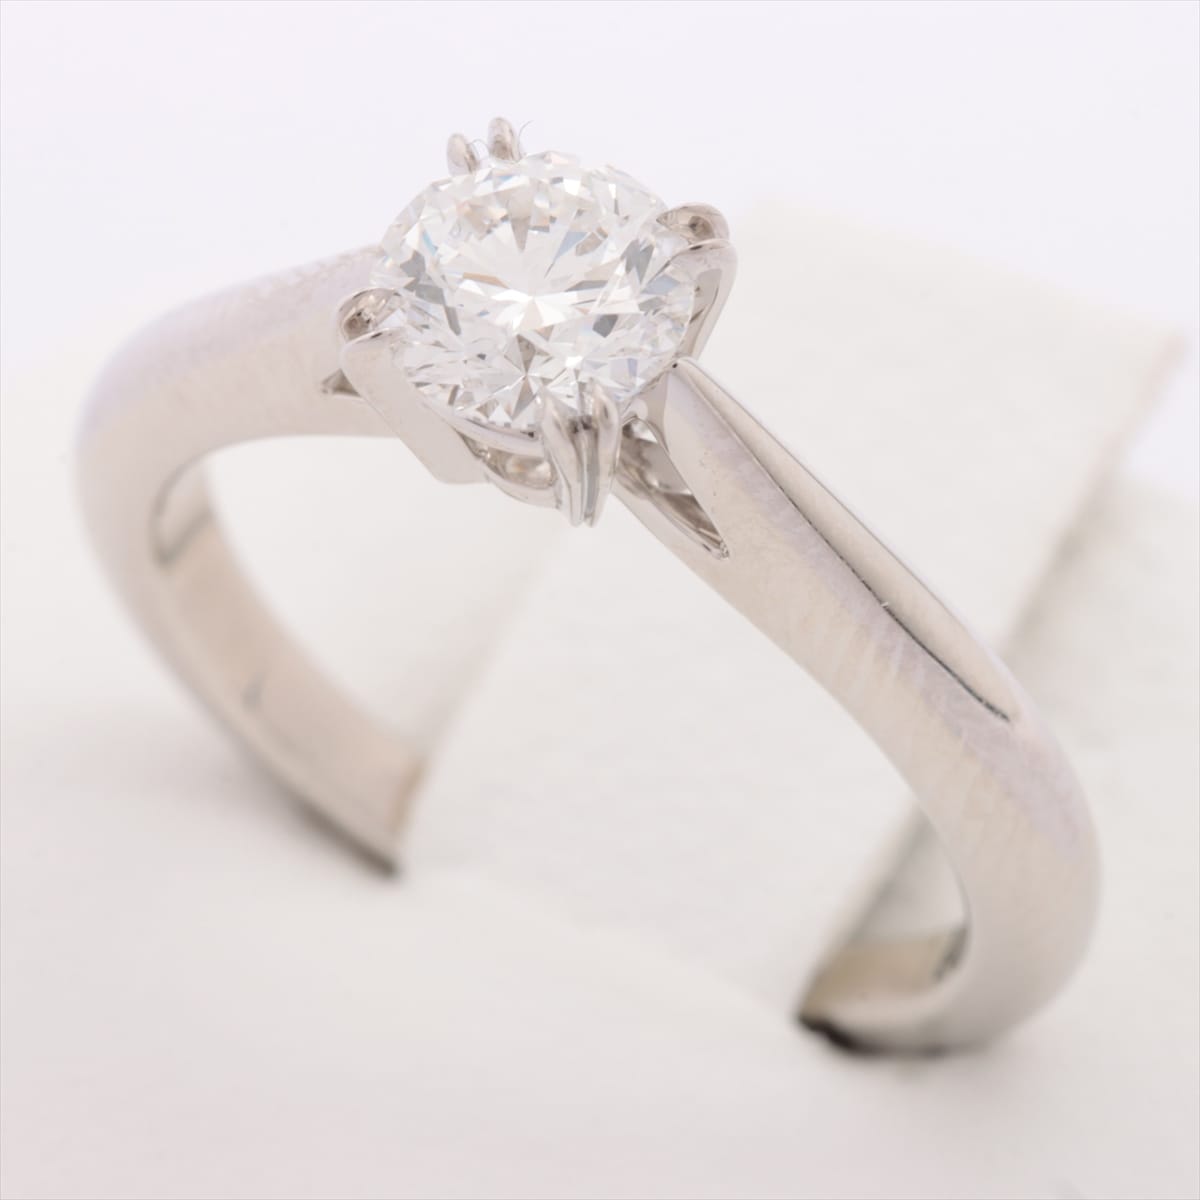 Harry Winston Solitaire diamond rings Pt950 4.4g 0.53 E VS1 3EX NONE